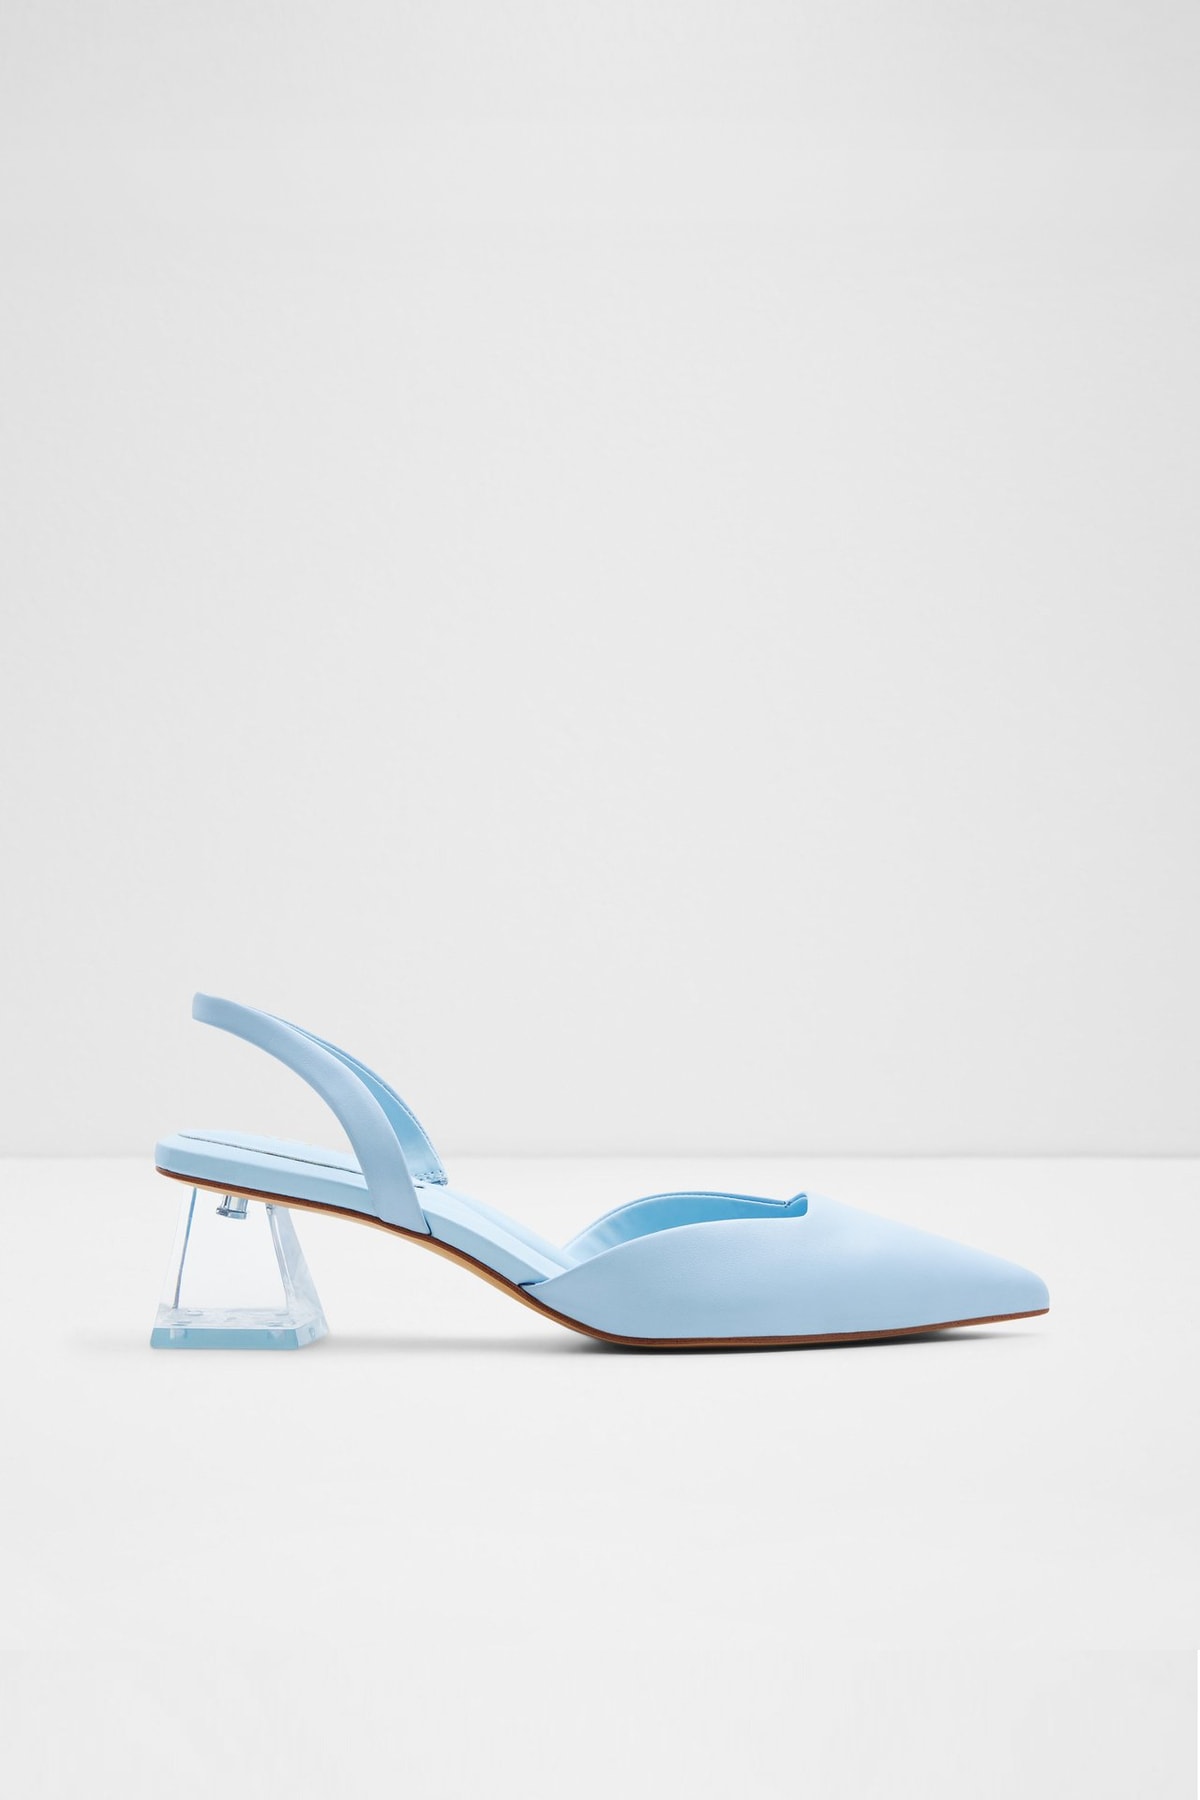 Aldo Malaga - Mavi Kadın Topuklu Ayakkabı